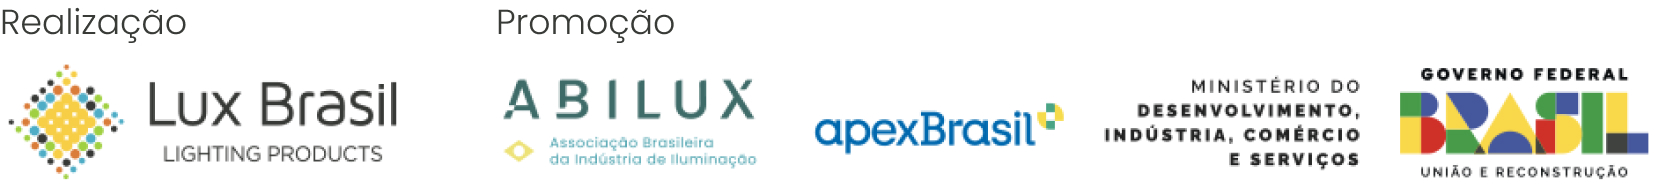 Realização: Lux Brasil - Promoção: Abilux e ApexBrasil